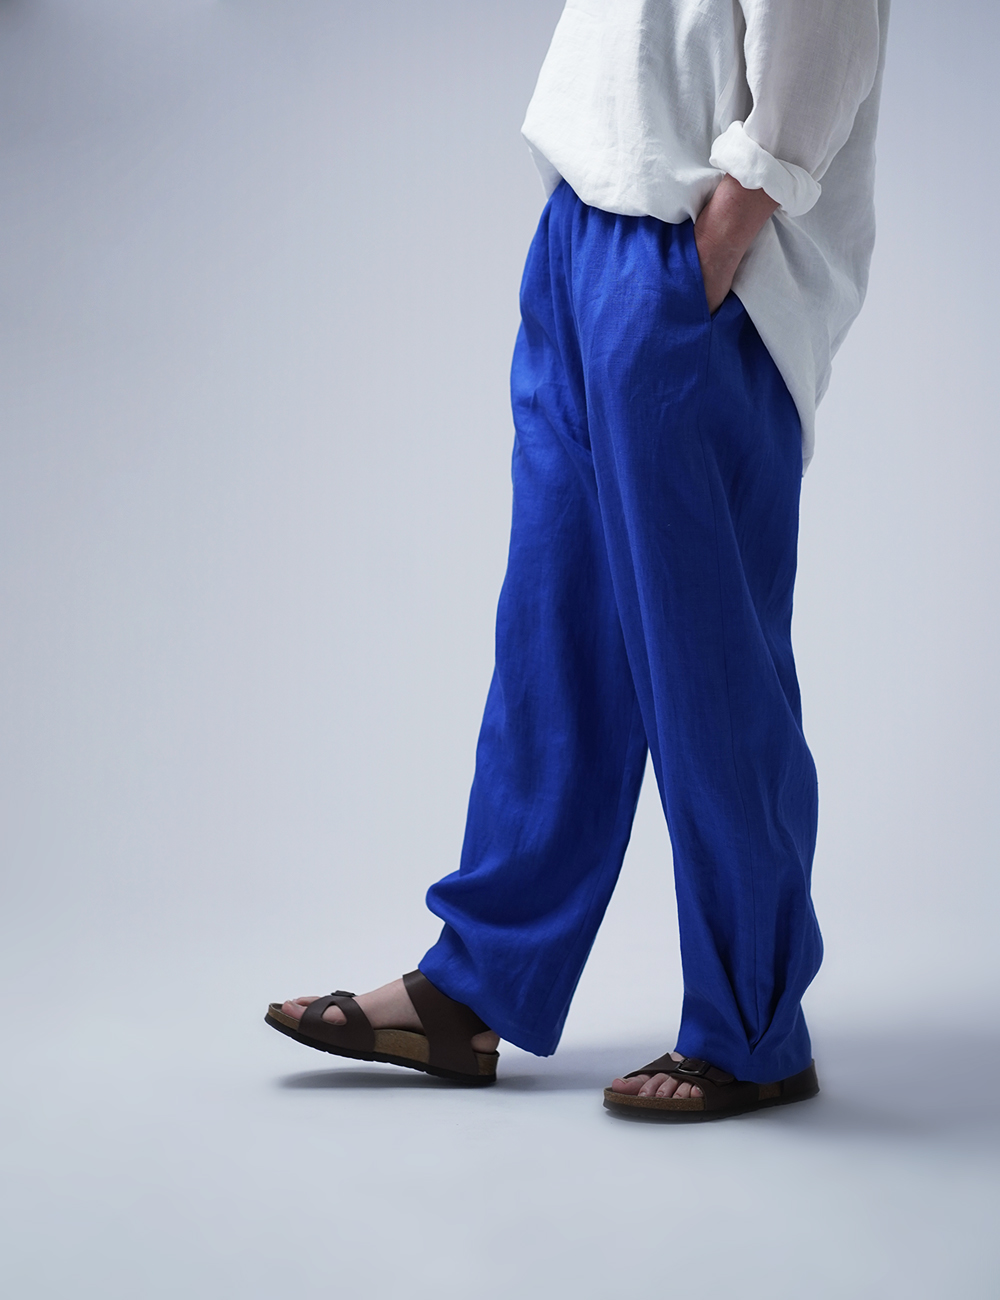 【wafu】Linen Pants 裾タック入り リネン ボールパンツ 男女兼用 / ウルトラマリン b013g-umn1